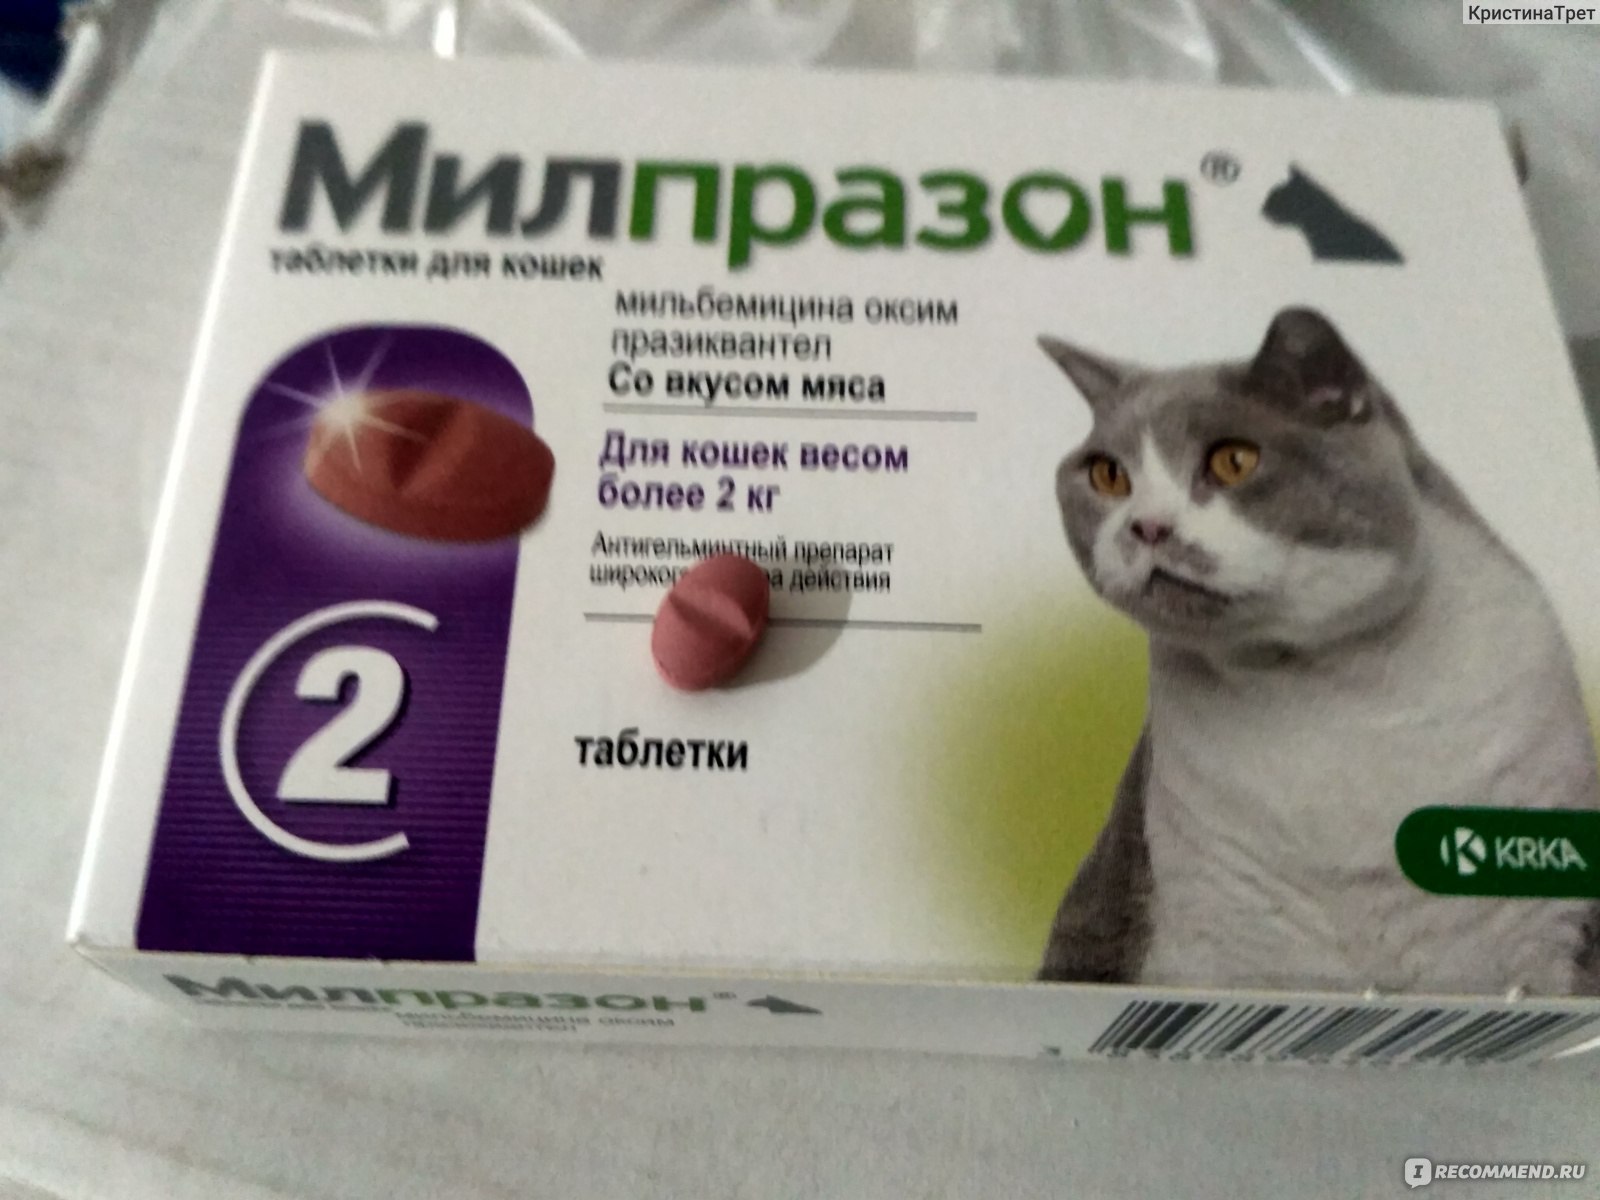 Средство Милпразон: защита кошки от глистов